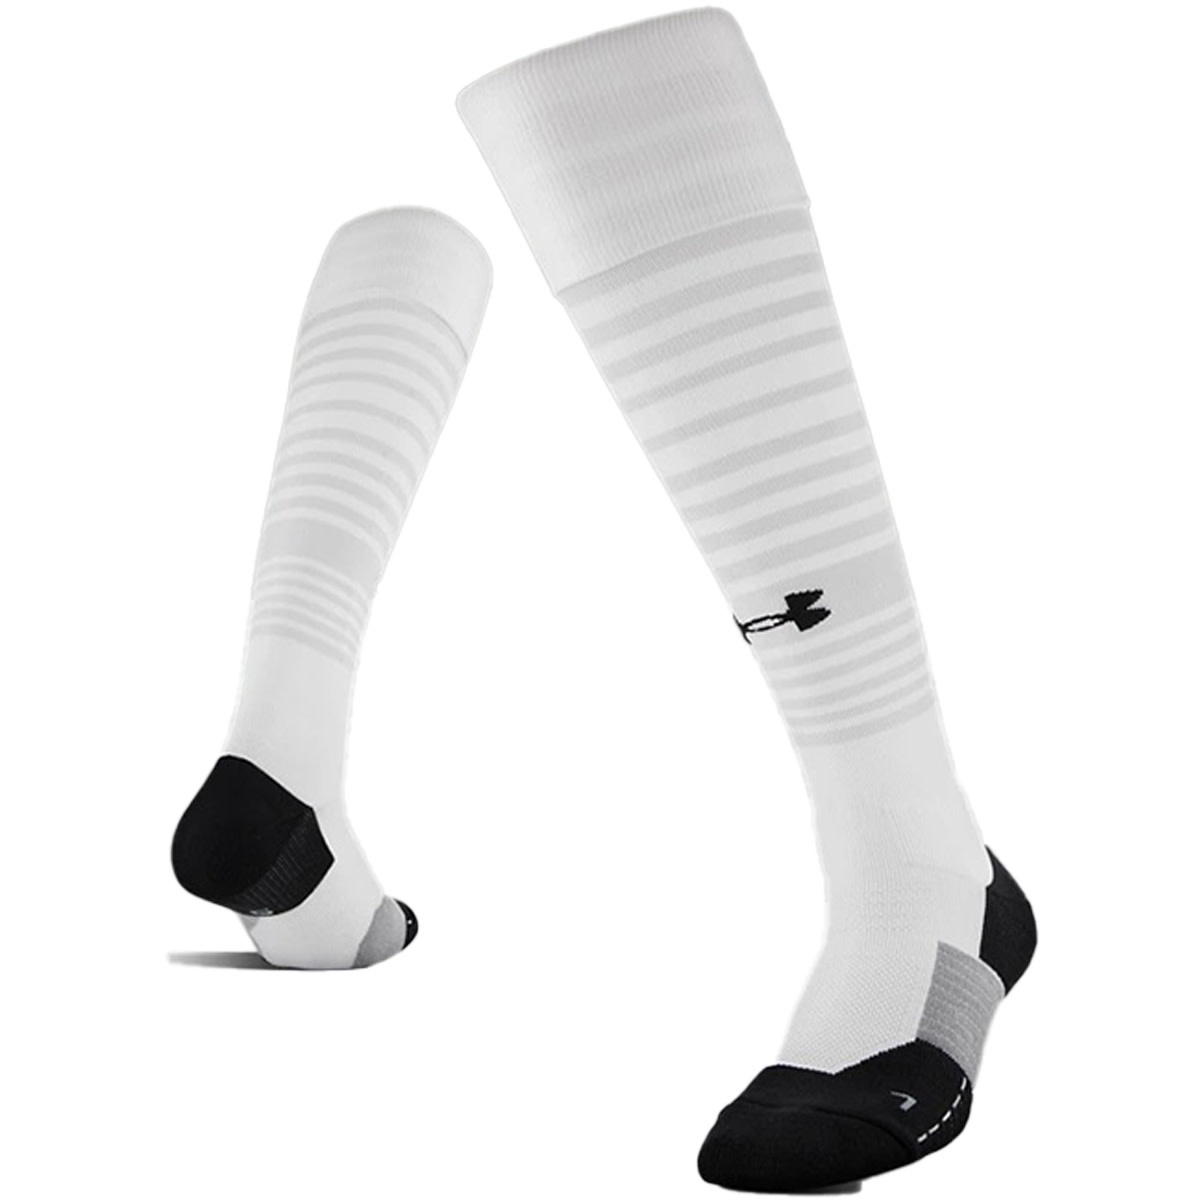 https://cdn.shoplightspeed.com/shops/611228/files/31840010/under-armour-ua-performance-otc-socks-white.jpg